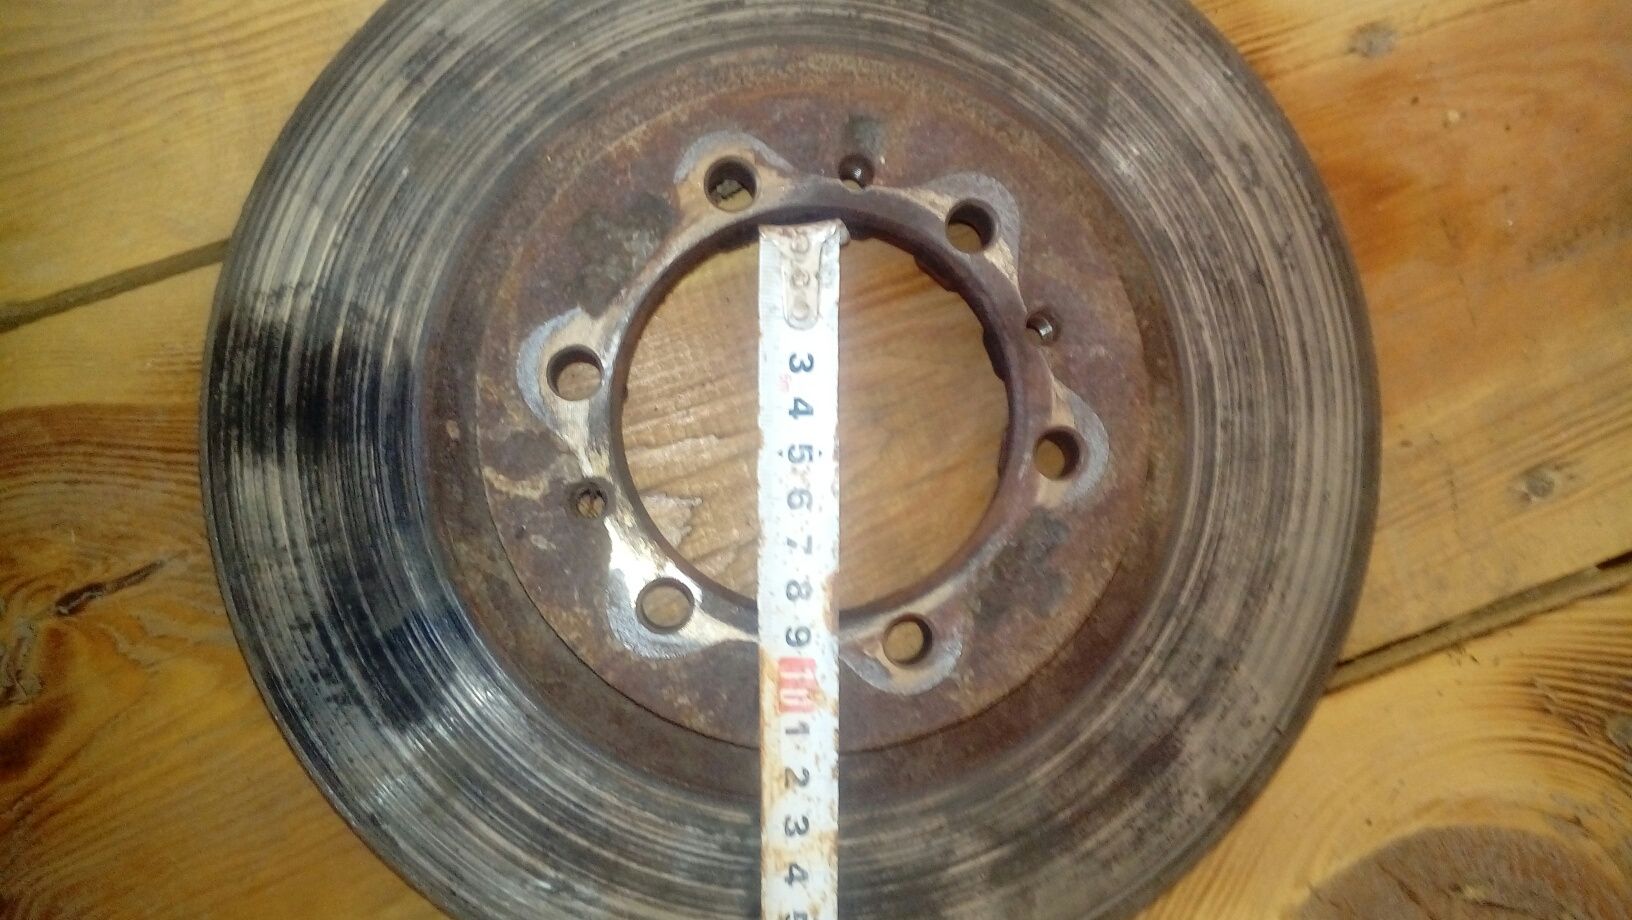 Тормозной передний диск от МИТСУБИСИ 5500 ТЕНГЕ.